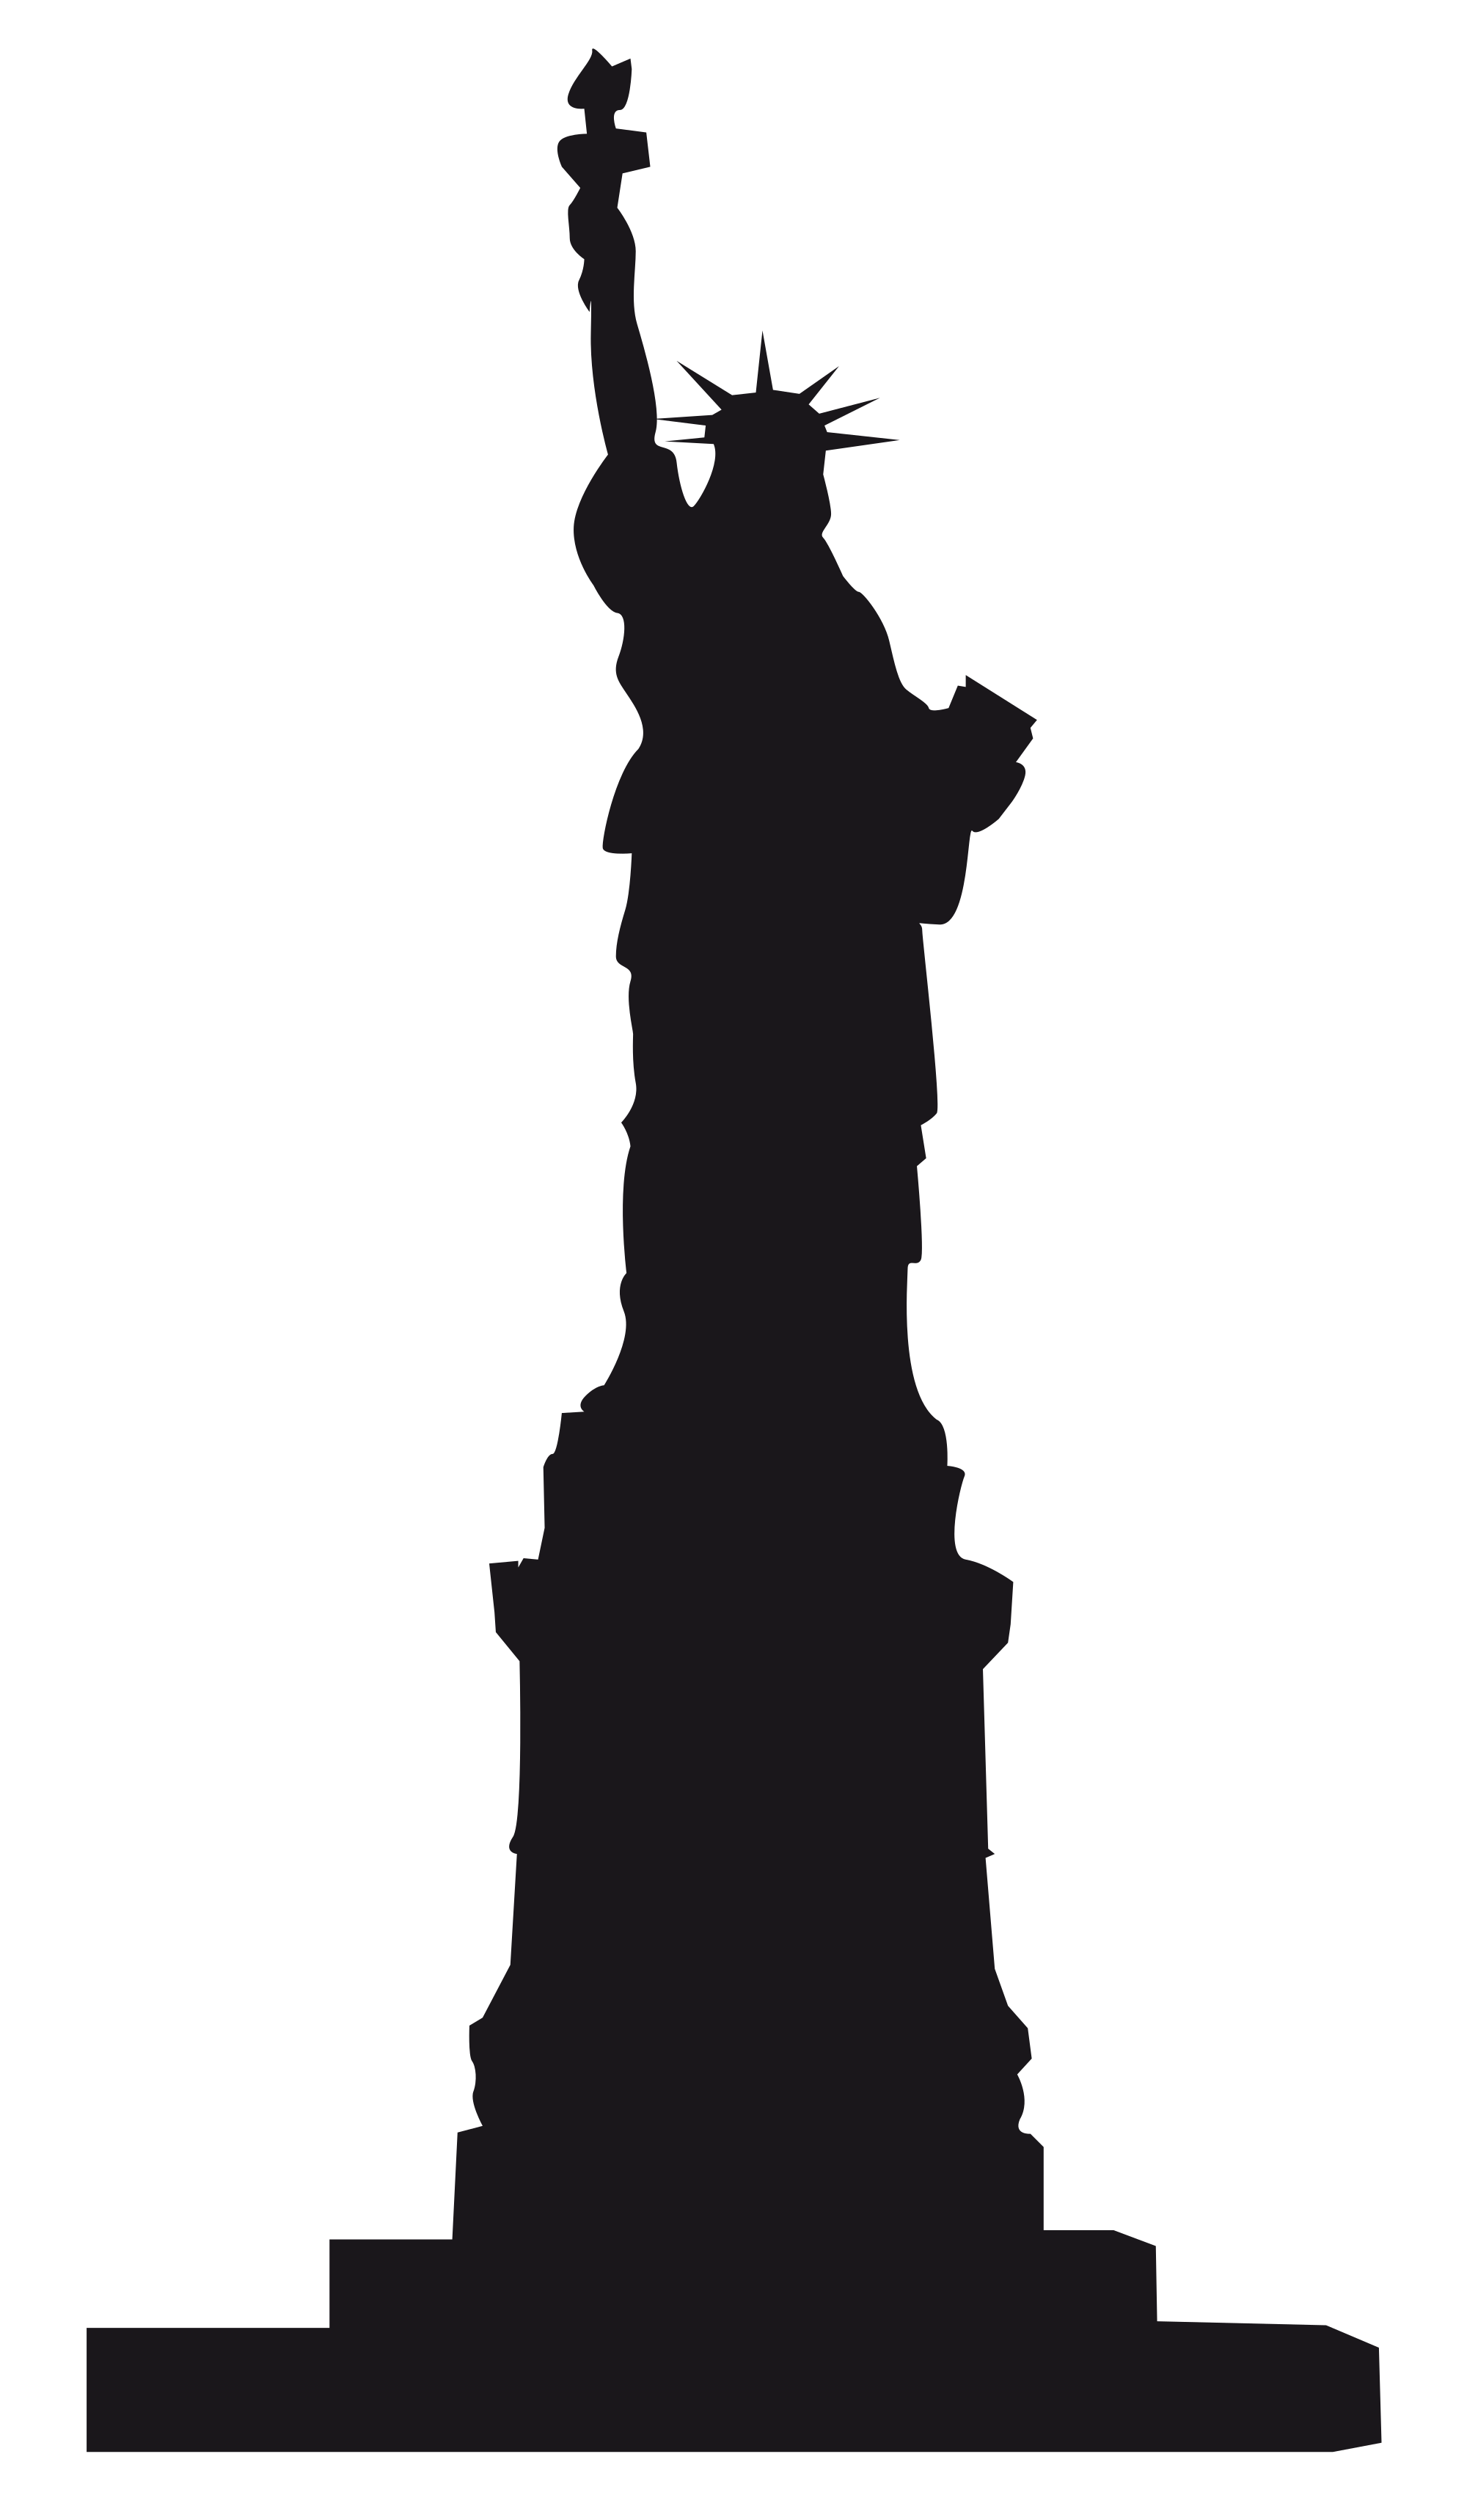 تمثال ليبرتي PNG صورة مع خلفية شفافة